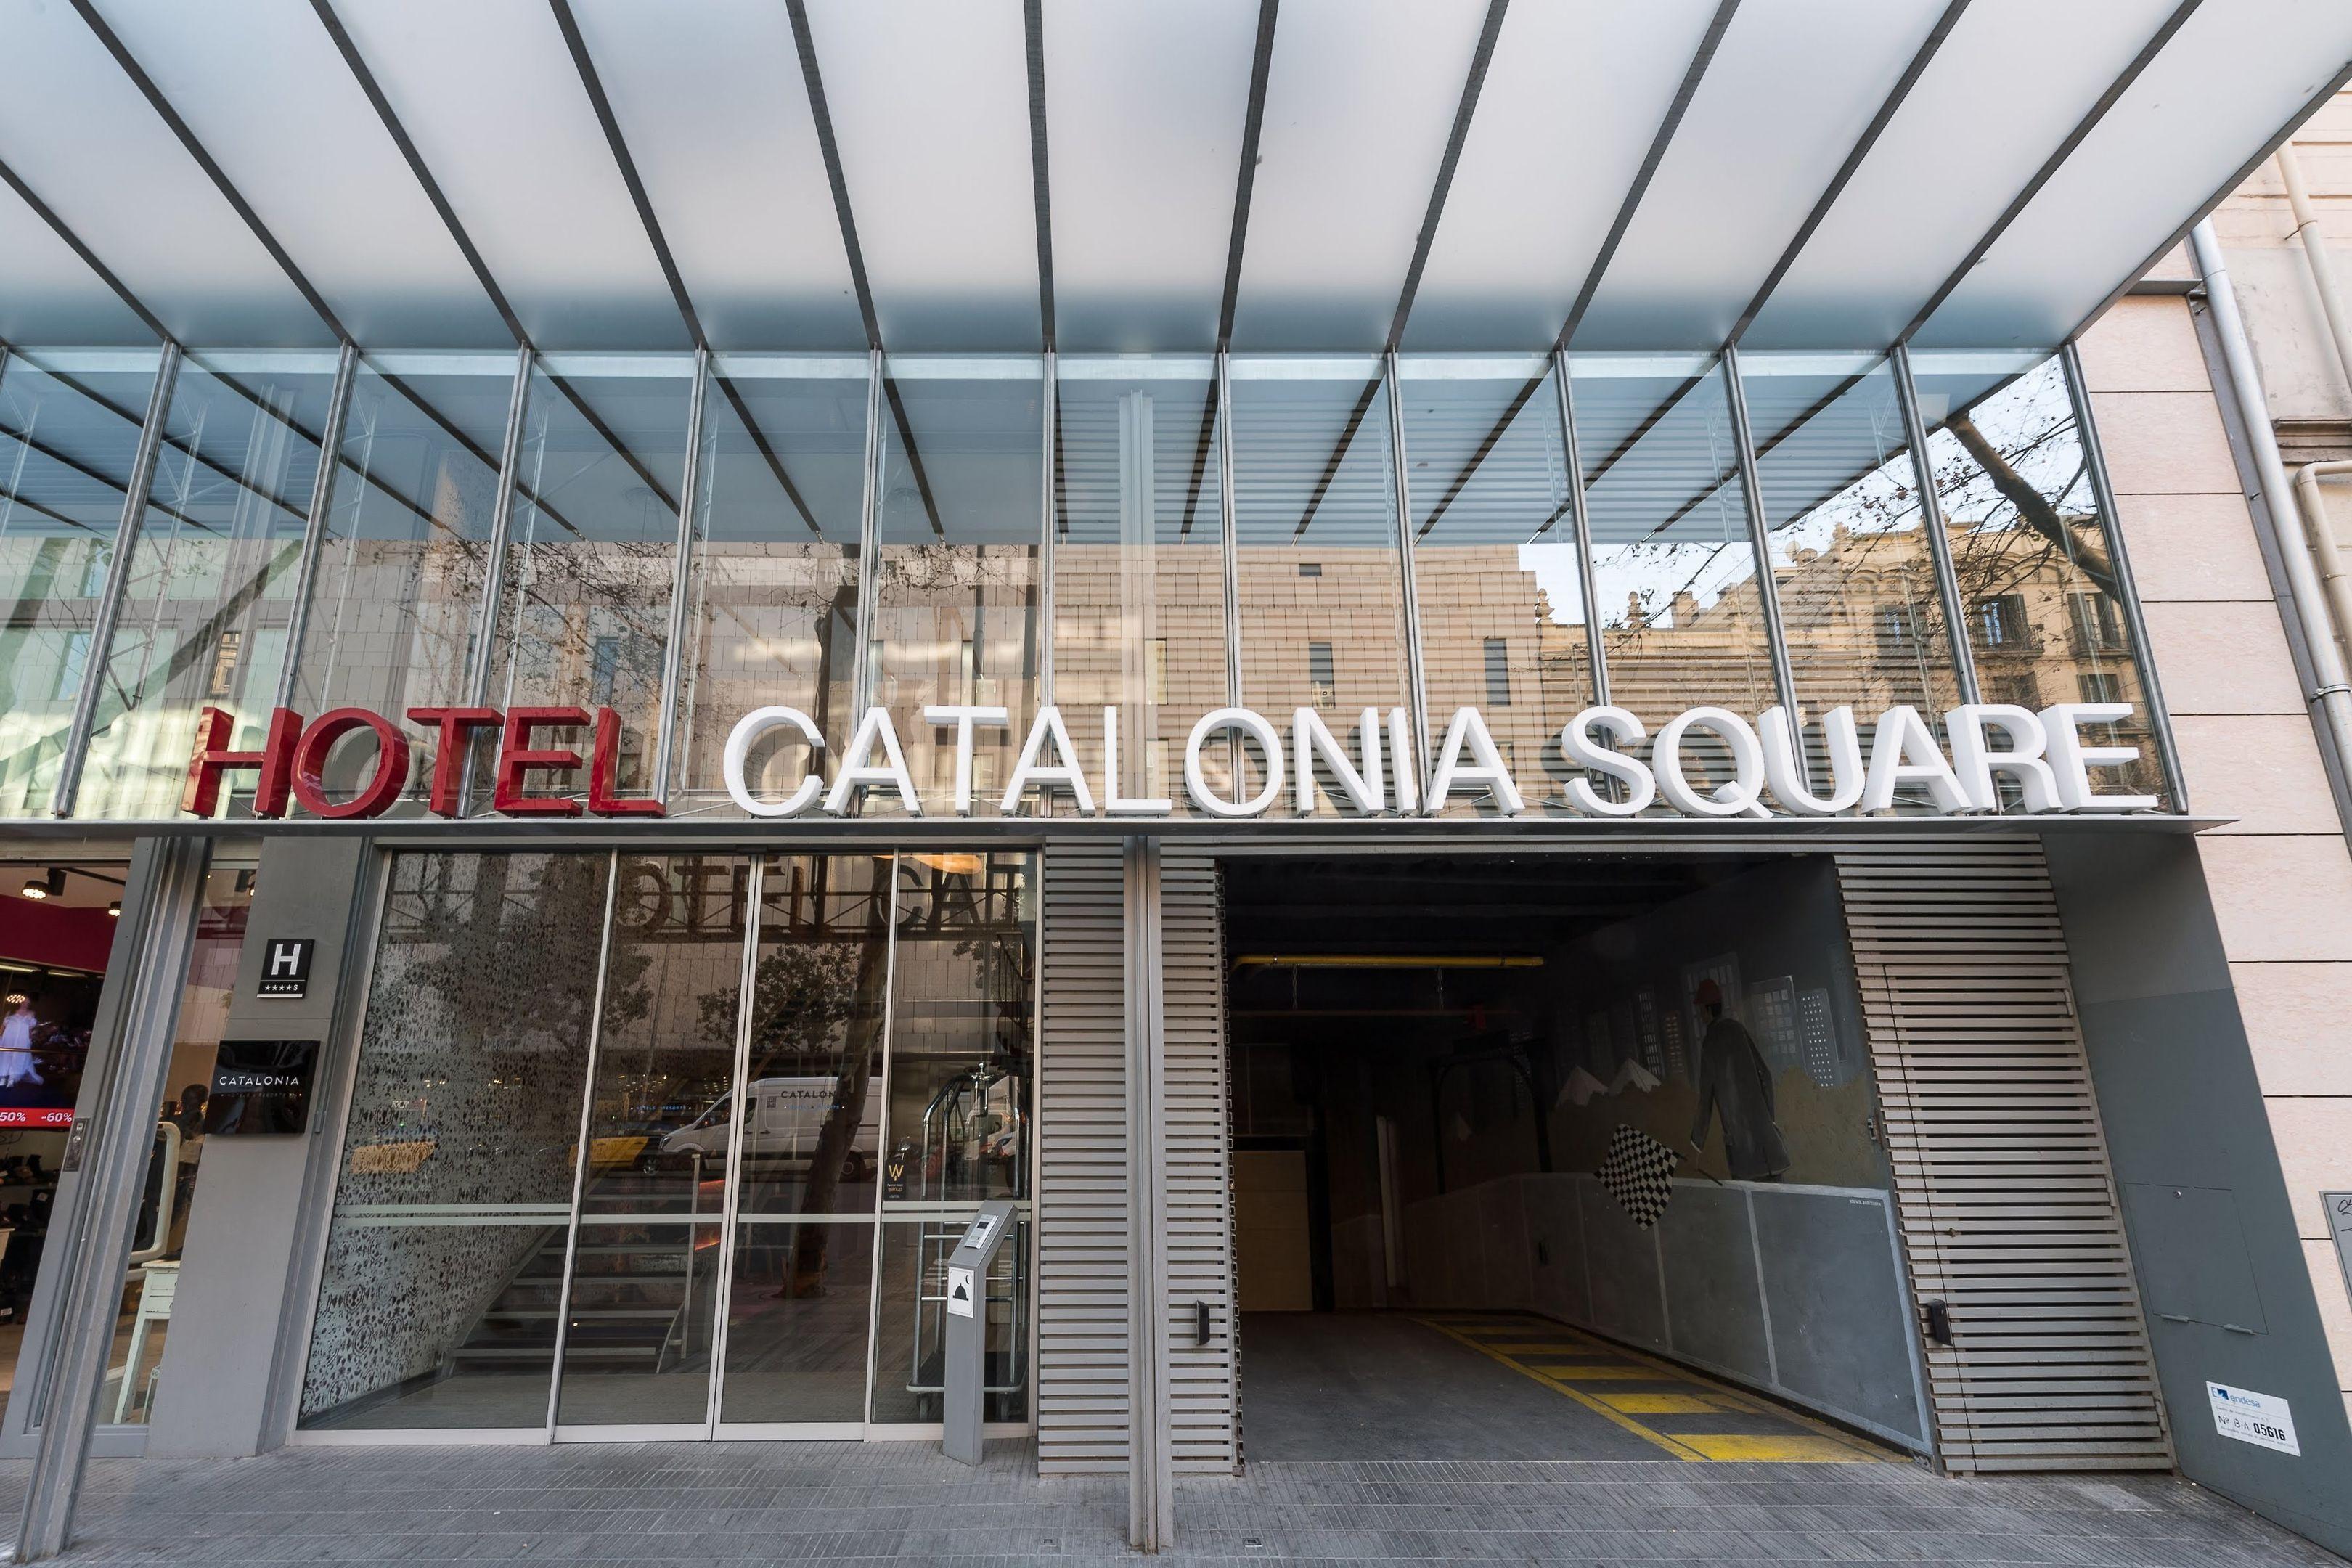 Catalonia Square Hotel